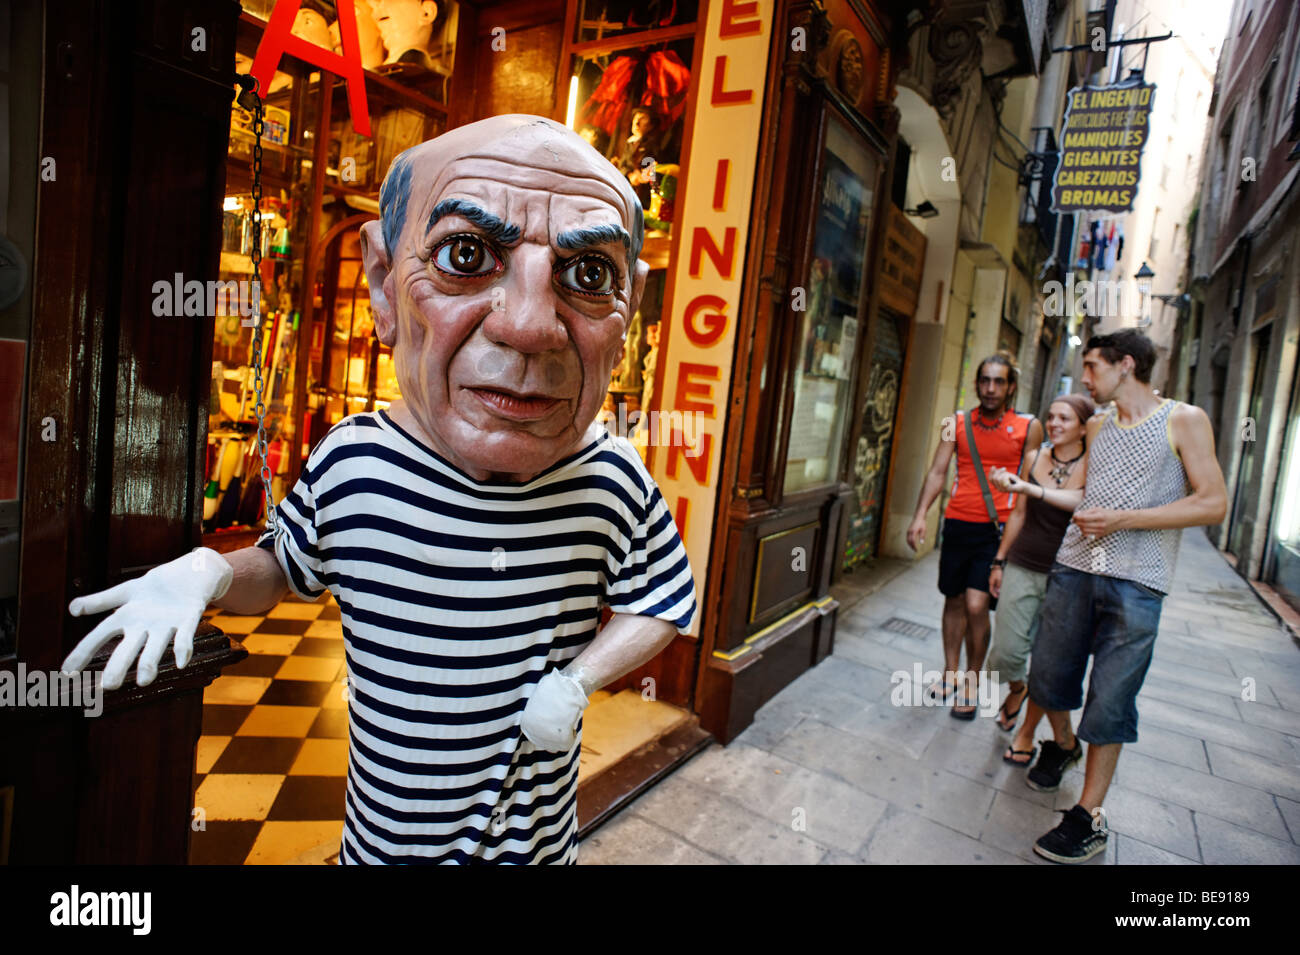 Pablo Picasso manichino esterno giocolieri store. Barri Gotic. Barcellona. Spagna Foto Stock